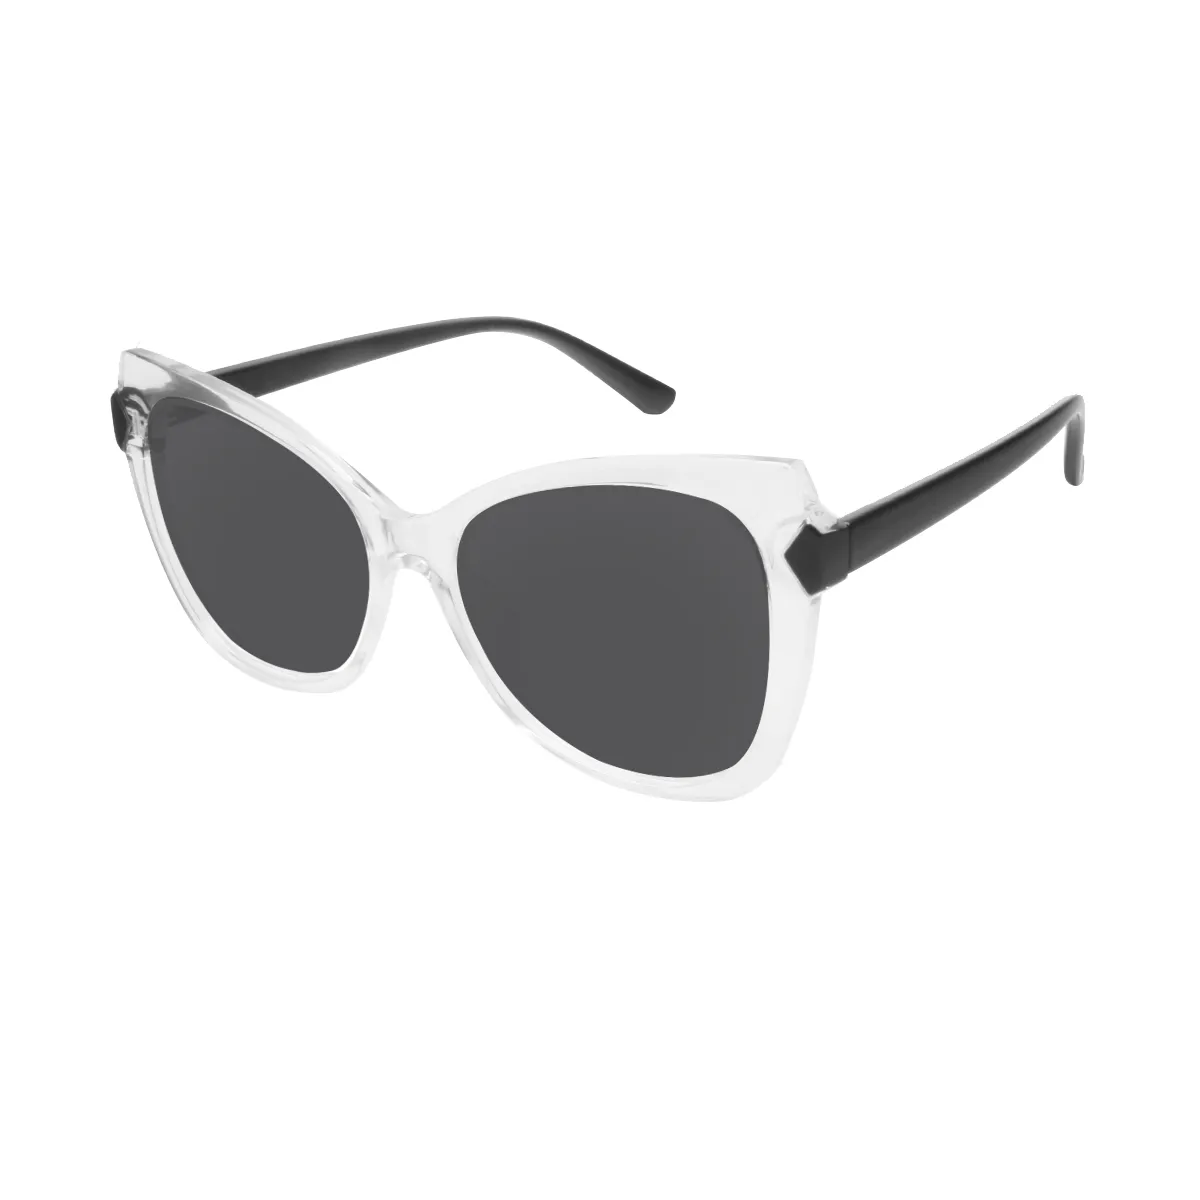 Brenda - Cat-eye Transparent Sunglasses for Women